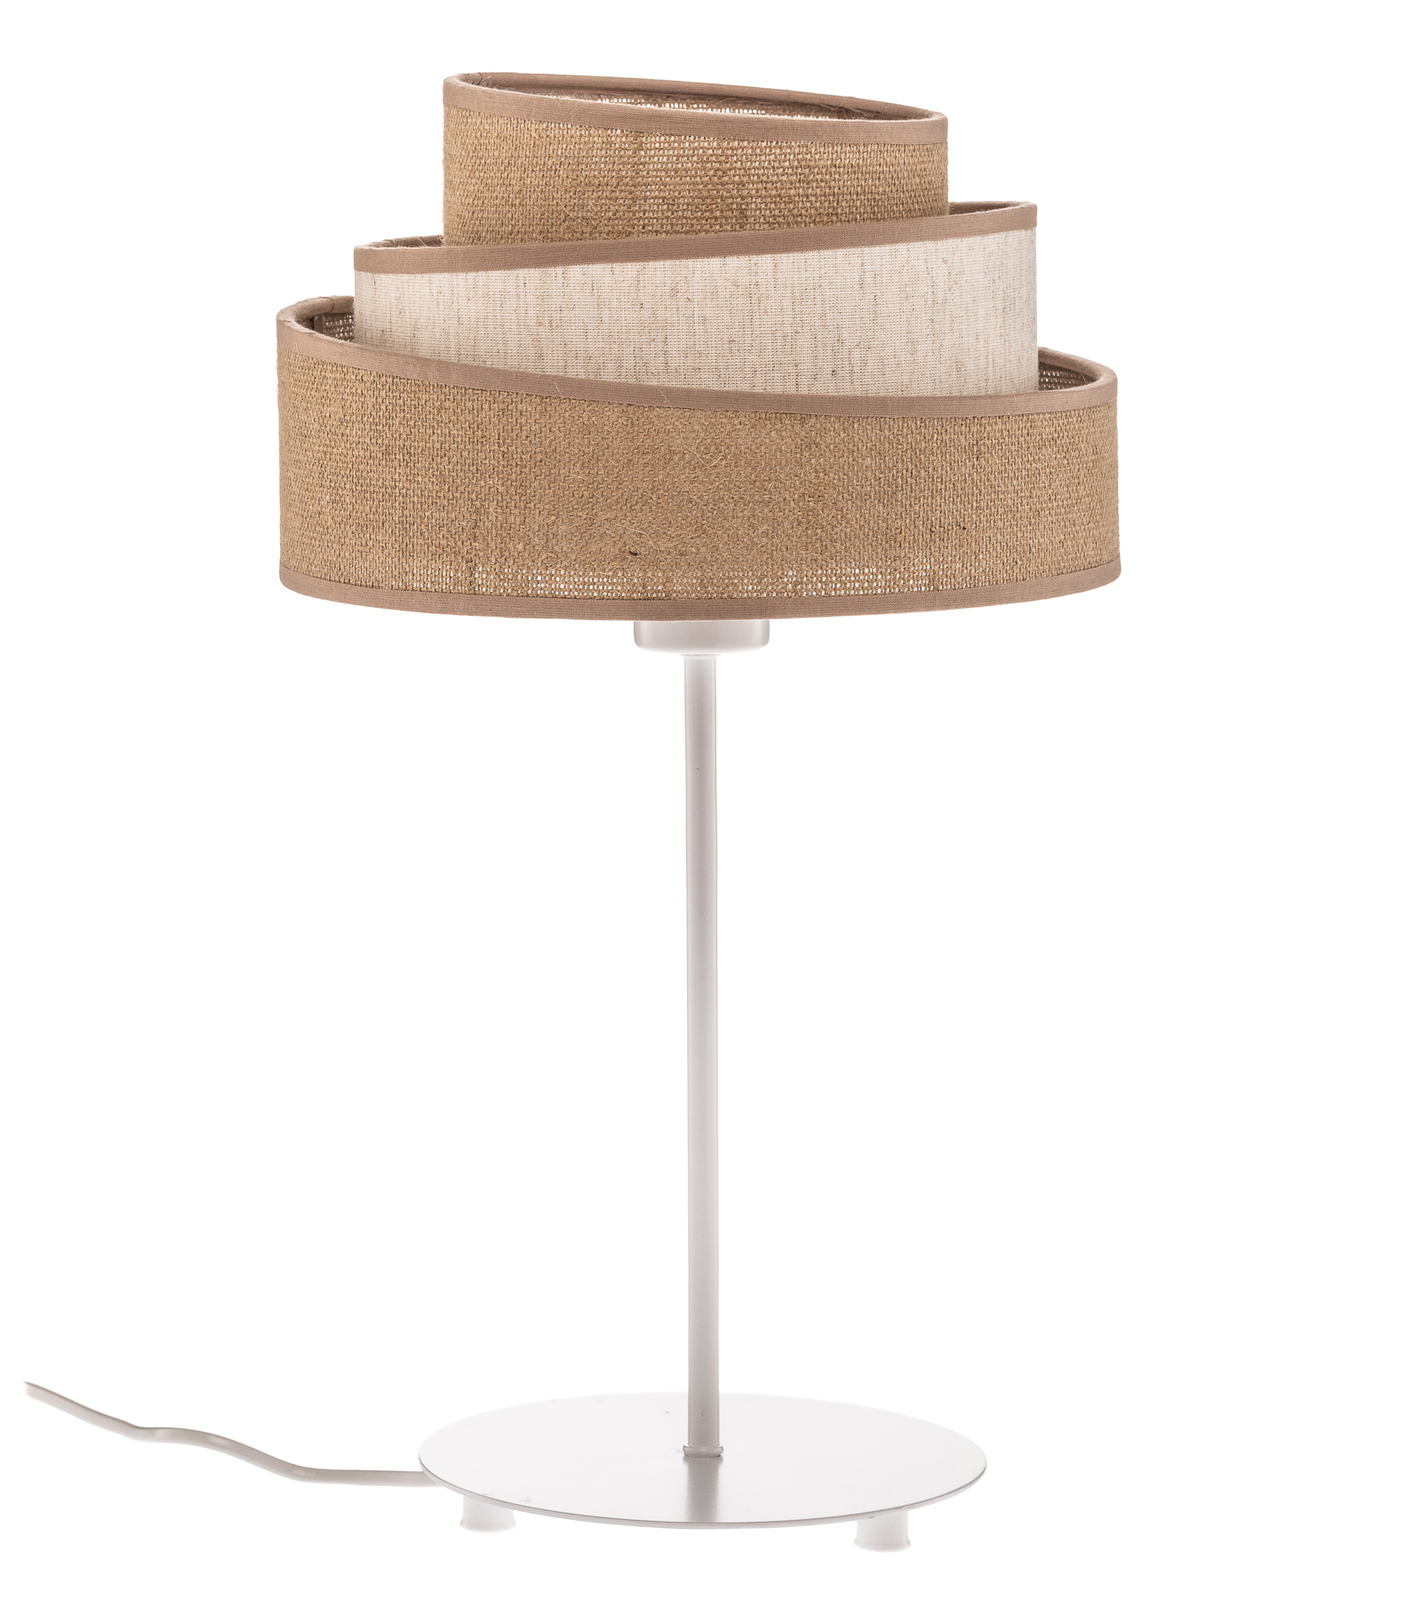 Lampa stołowa Trio jute, brązowa/biała, 50cm